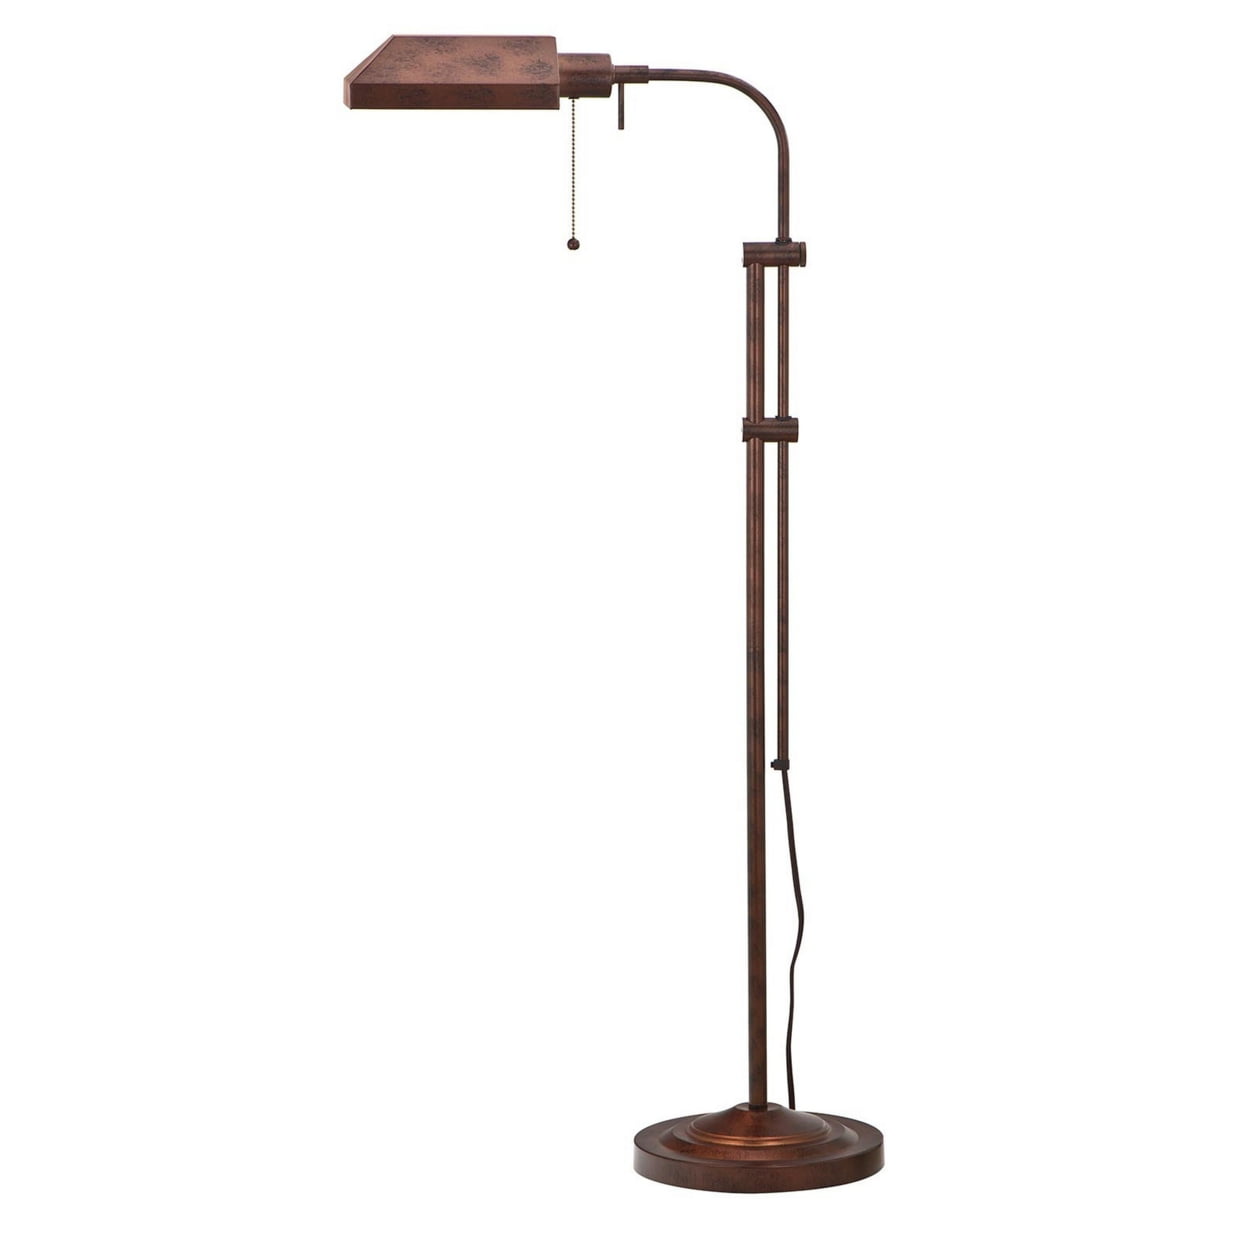 Picture of Benjara BM225082 Metal Rectangular Floor Lamp with Adjustable Pole, Bronze